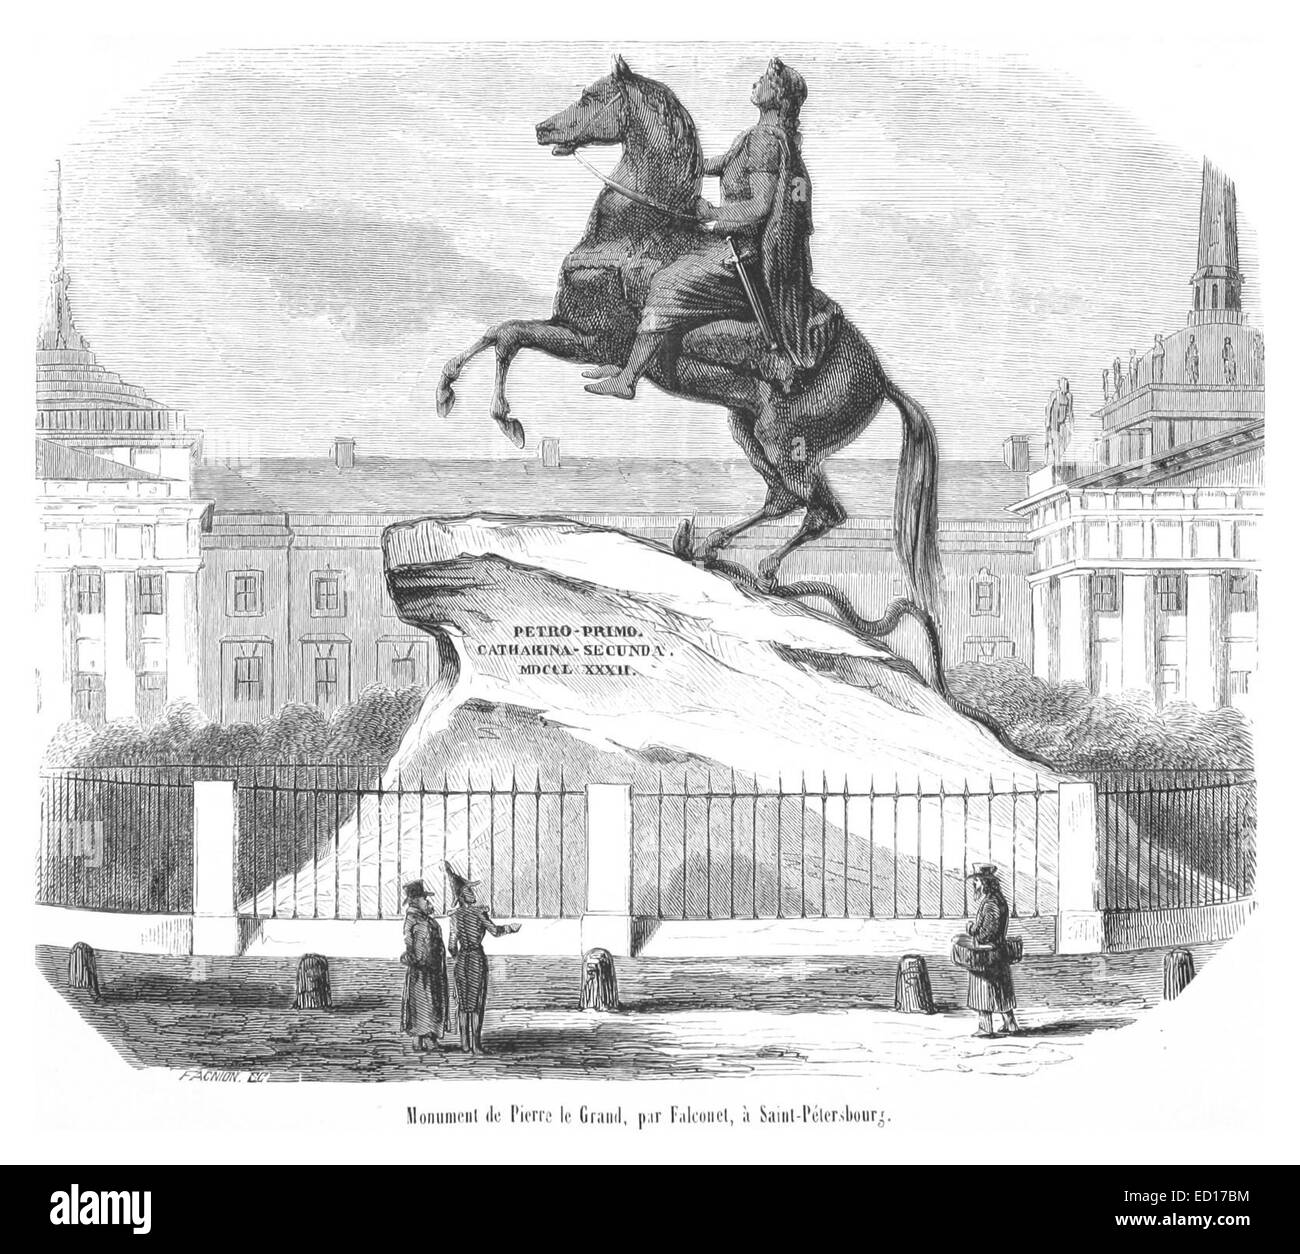 Monument de Pierre le Grand, par Falconet, à Saint-Pétersbourg Banque D'Images